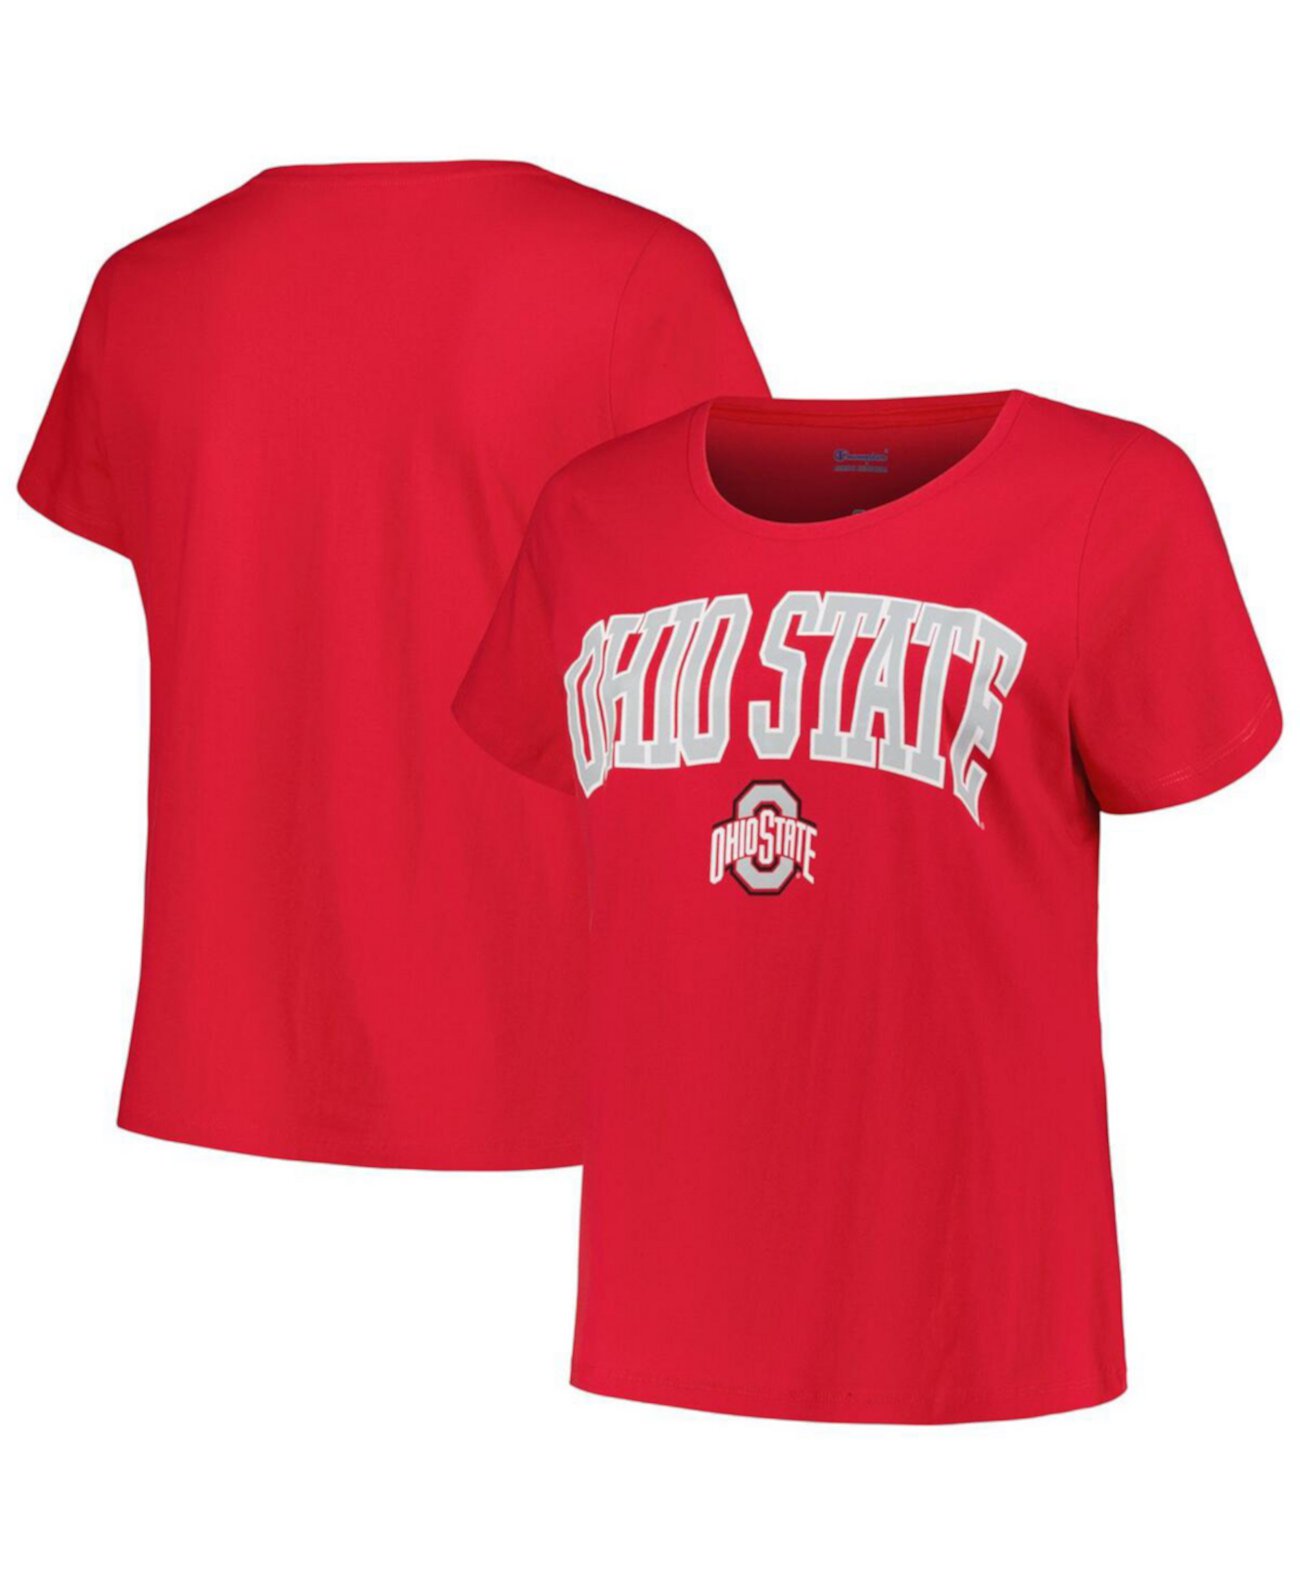 Женская футболка Scarlet Ohio State Buckeyes размера плюс с круглым вырезом и дугой над логотипом Profile